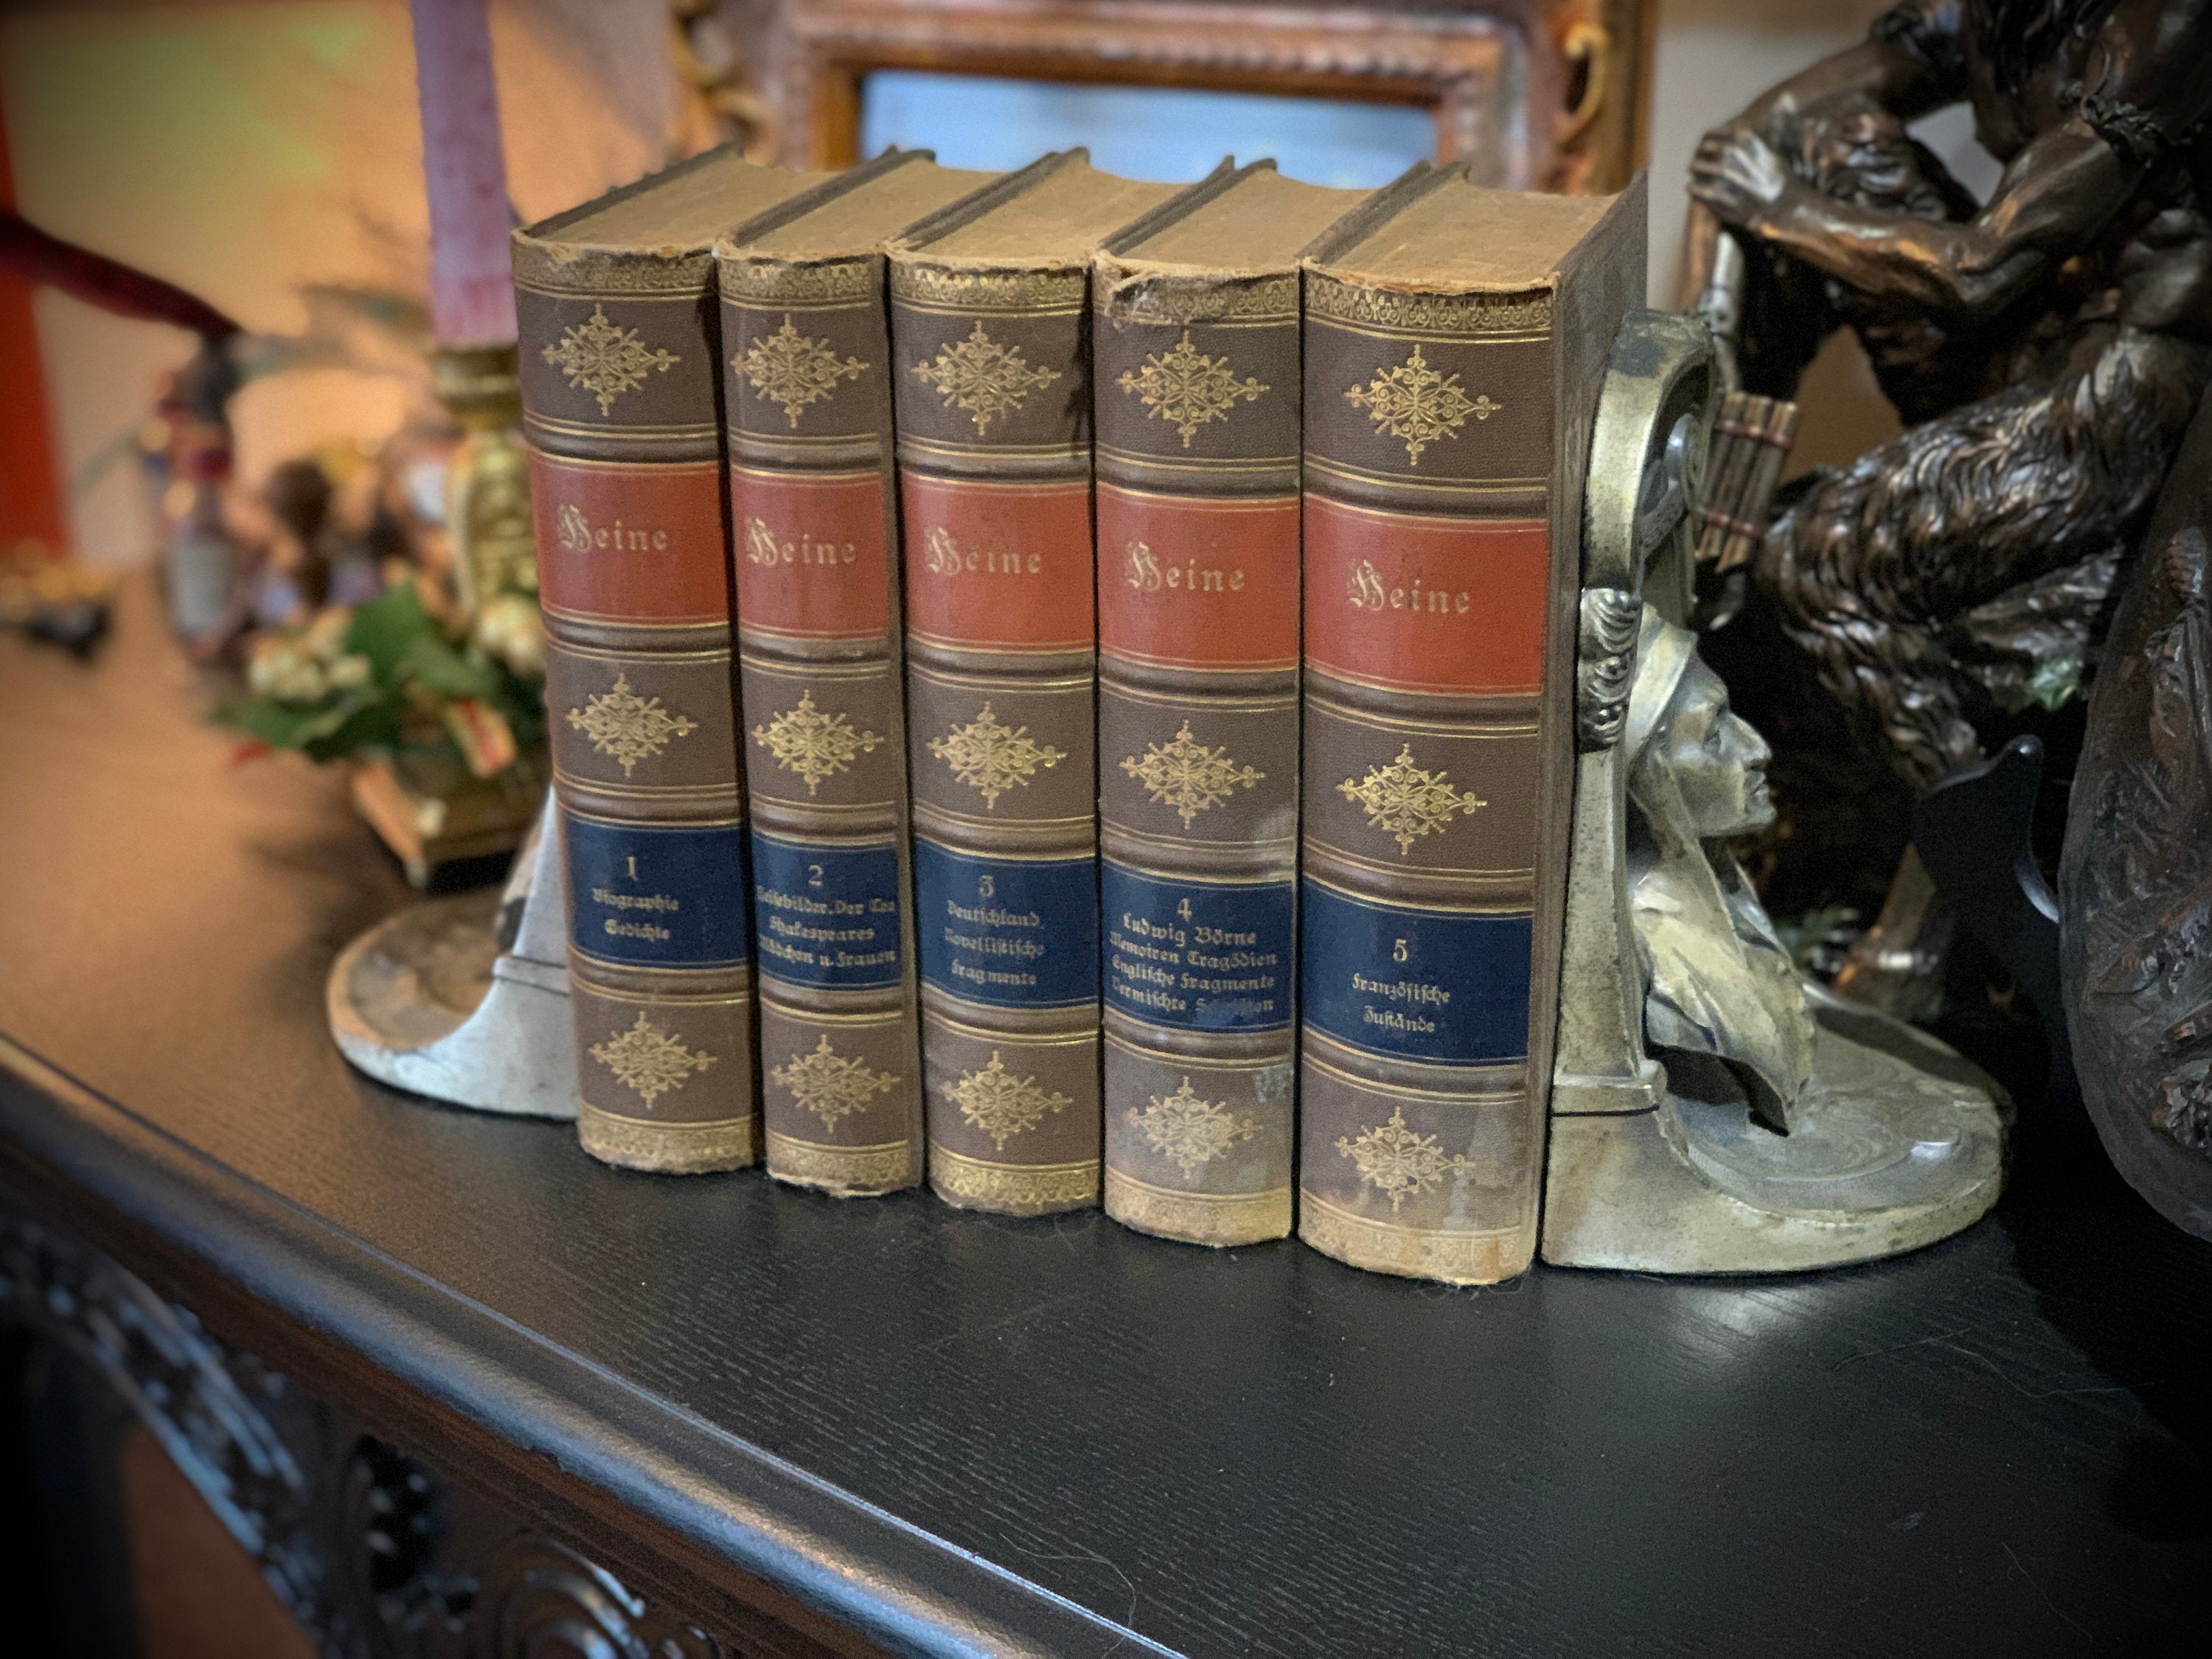 Heinrich Heines Sämtliche Werke, Heinrich Heine's Complete Works, German, 5 Vols